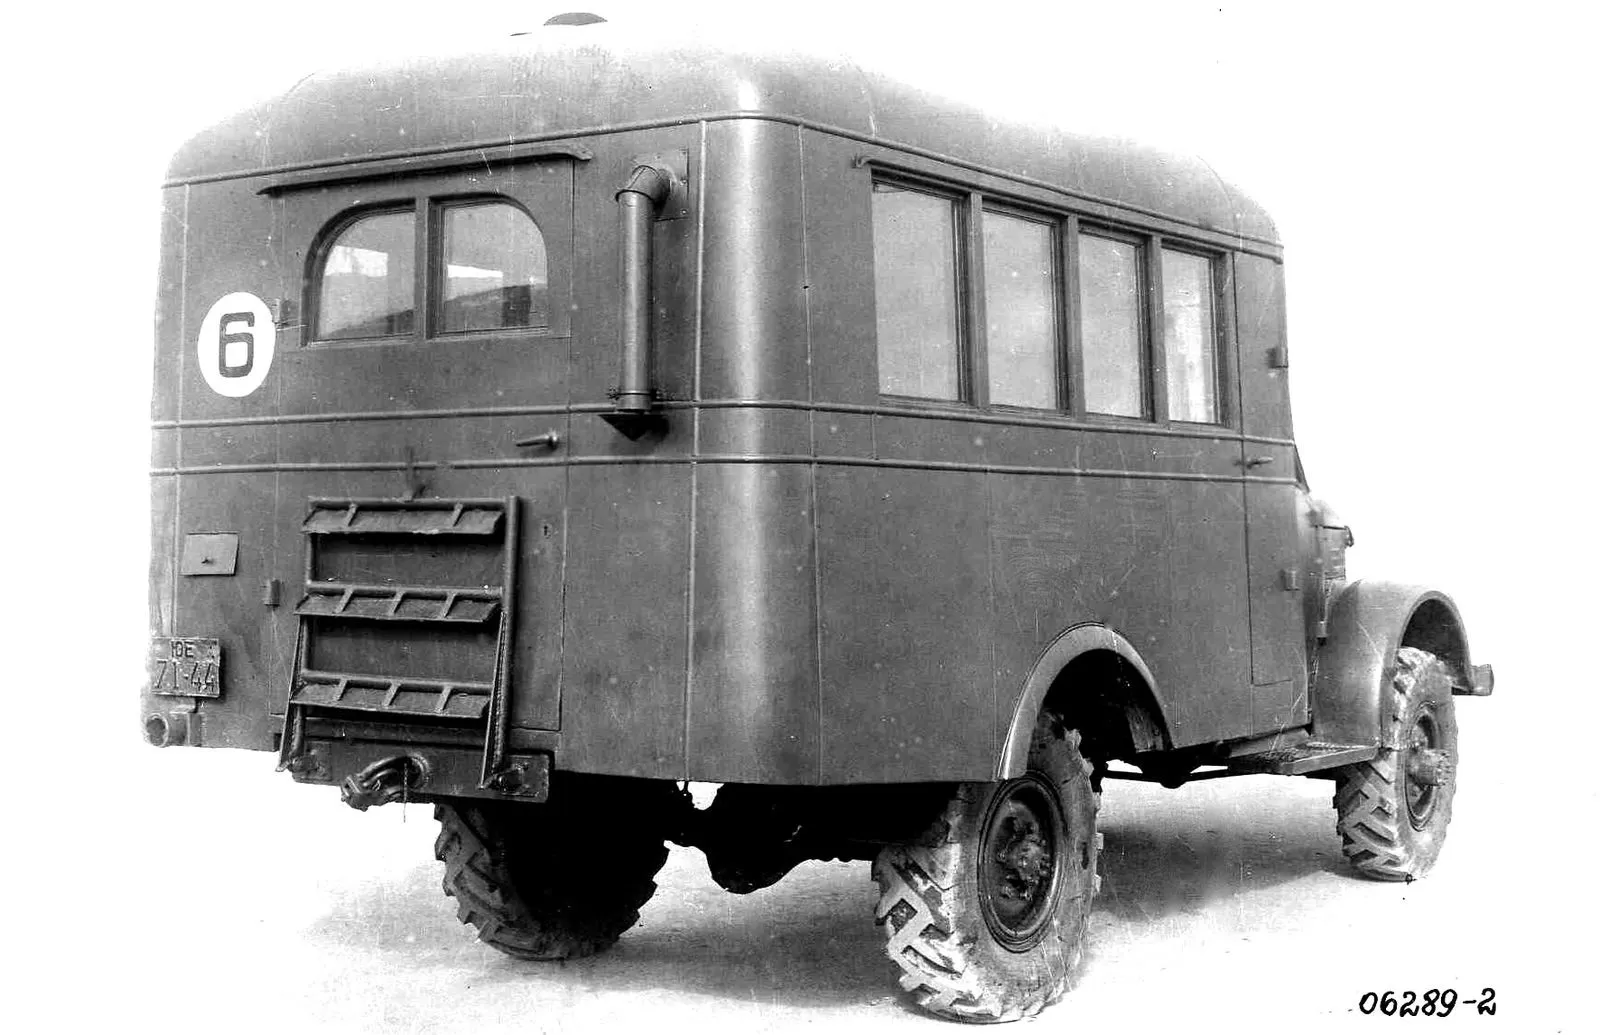 1952 1954. Автобус ап-6 на шасси ГАЗ-63. Ап-1 на шасси ГАЗ-51. ГАЗ-51 армейский санитарный автомобиль. Армейский автобус апп-66 (на шасси ГАЗ-66).